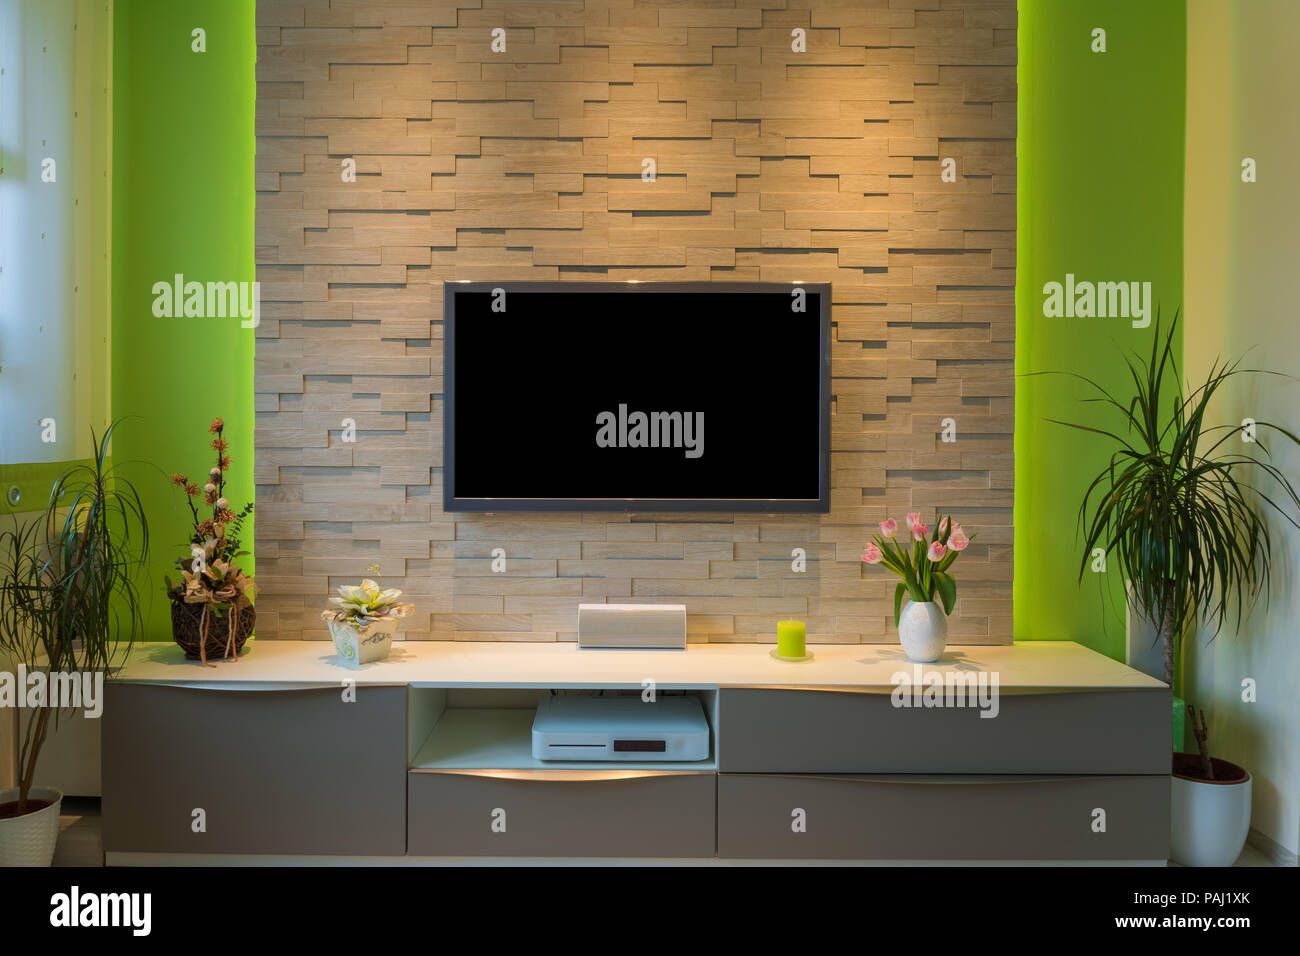 Televisión montada en la pared fotografías e imágenes de alta resolución -  Alamy